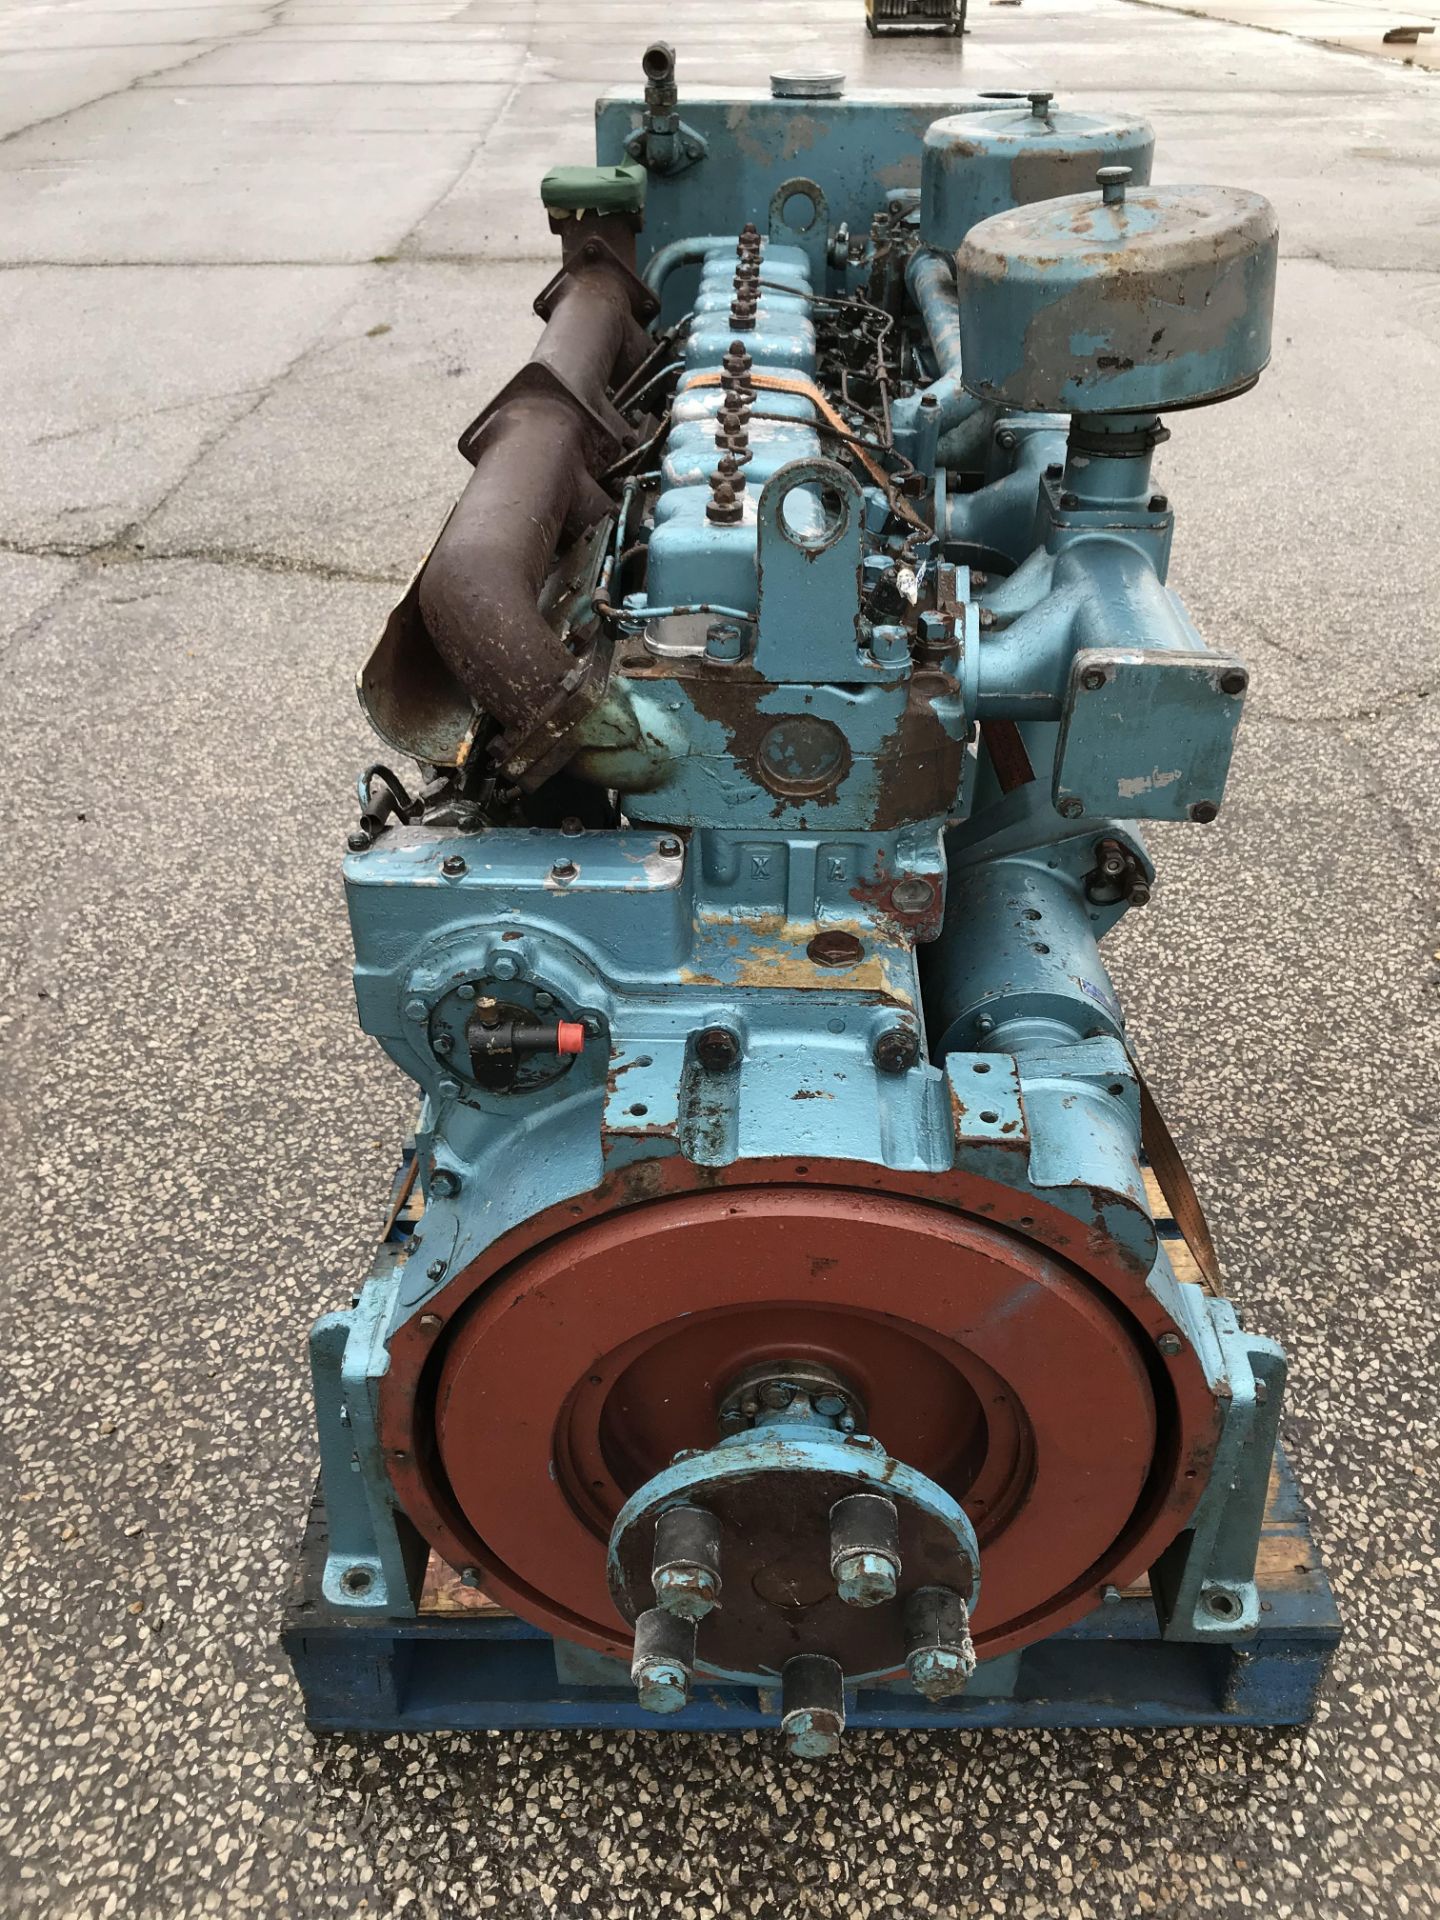 Dorman 6LE Diesel Engine: Ex Standby - Bild 4 aus 6